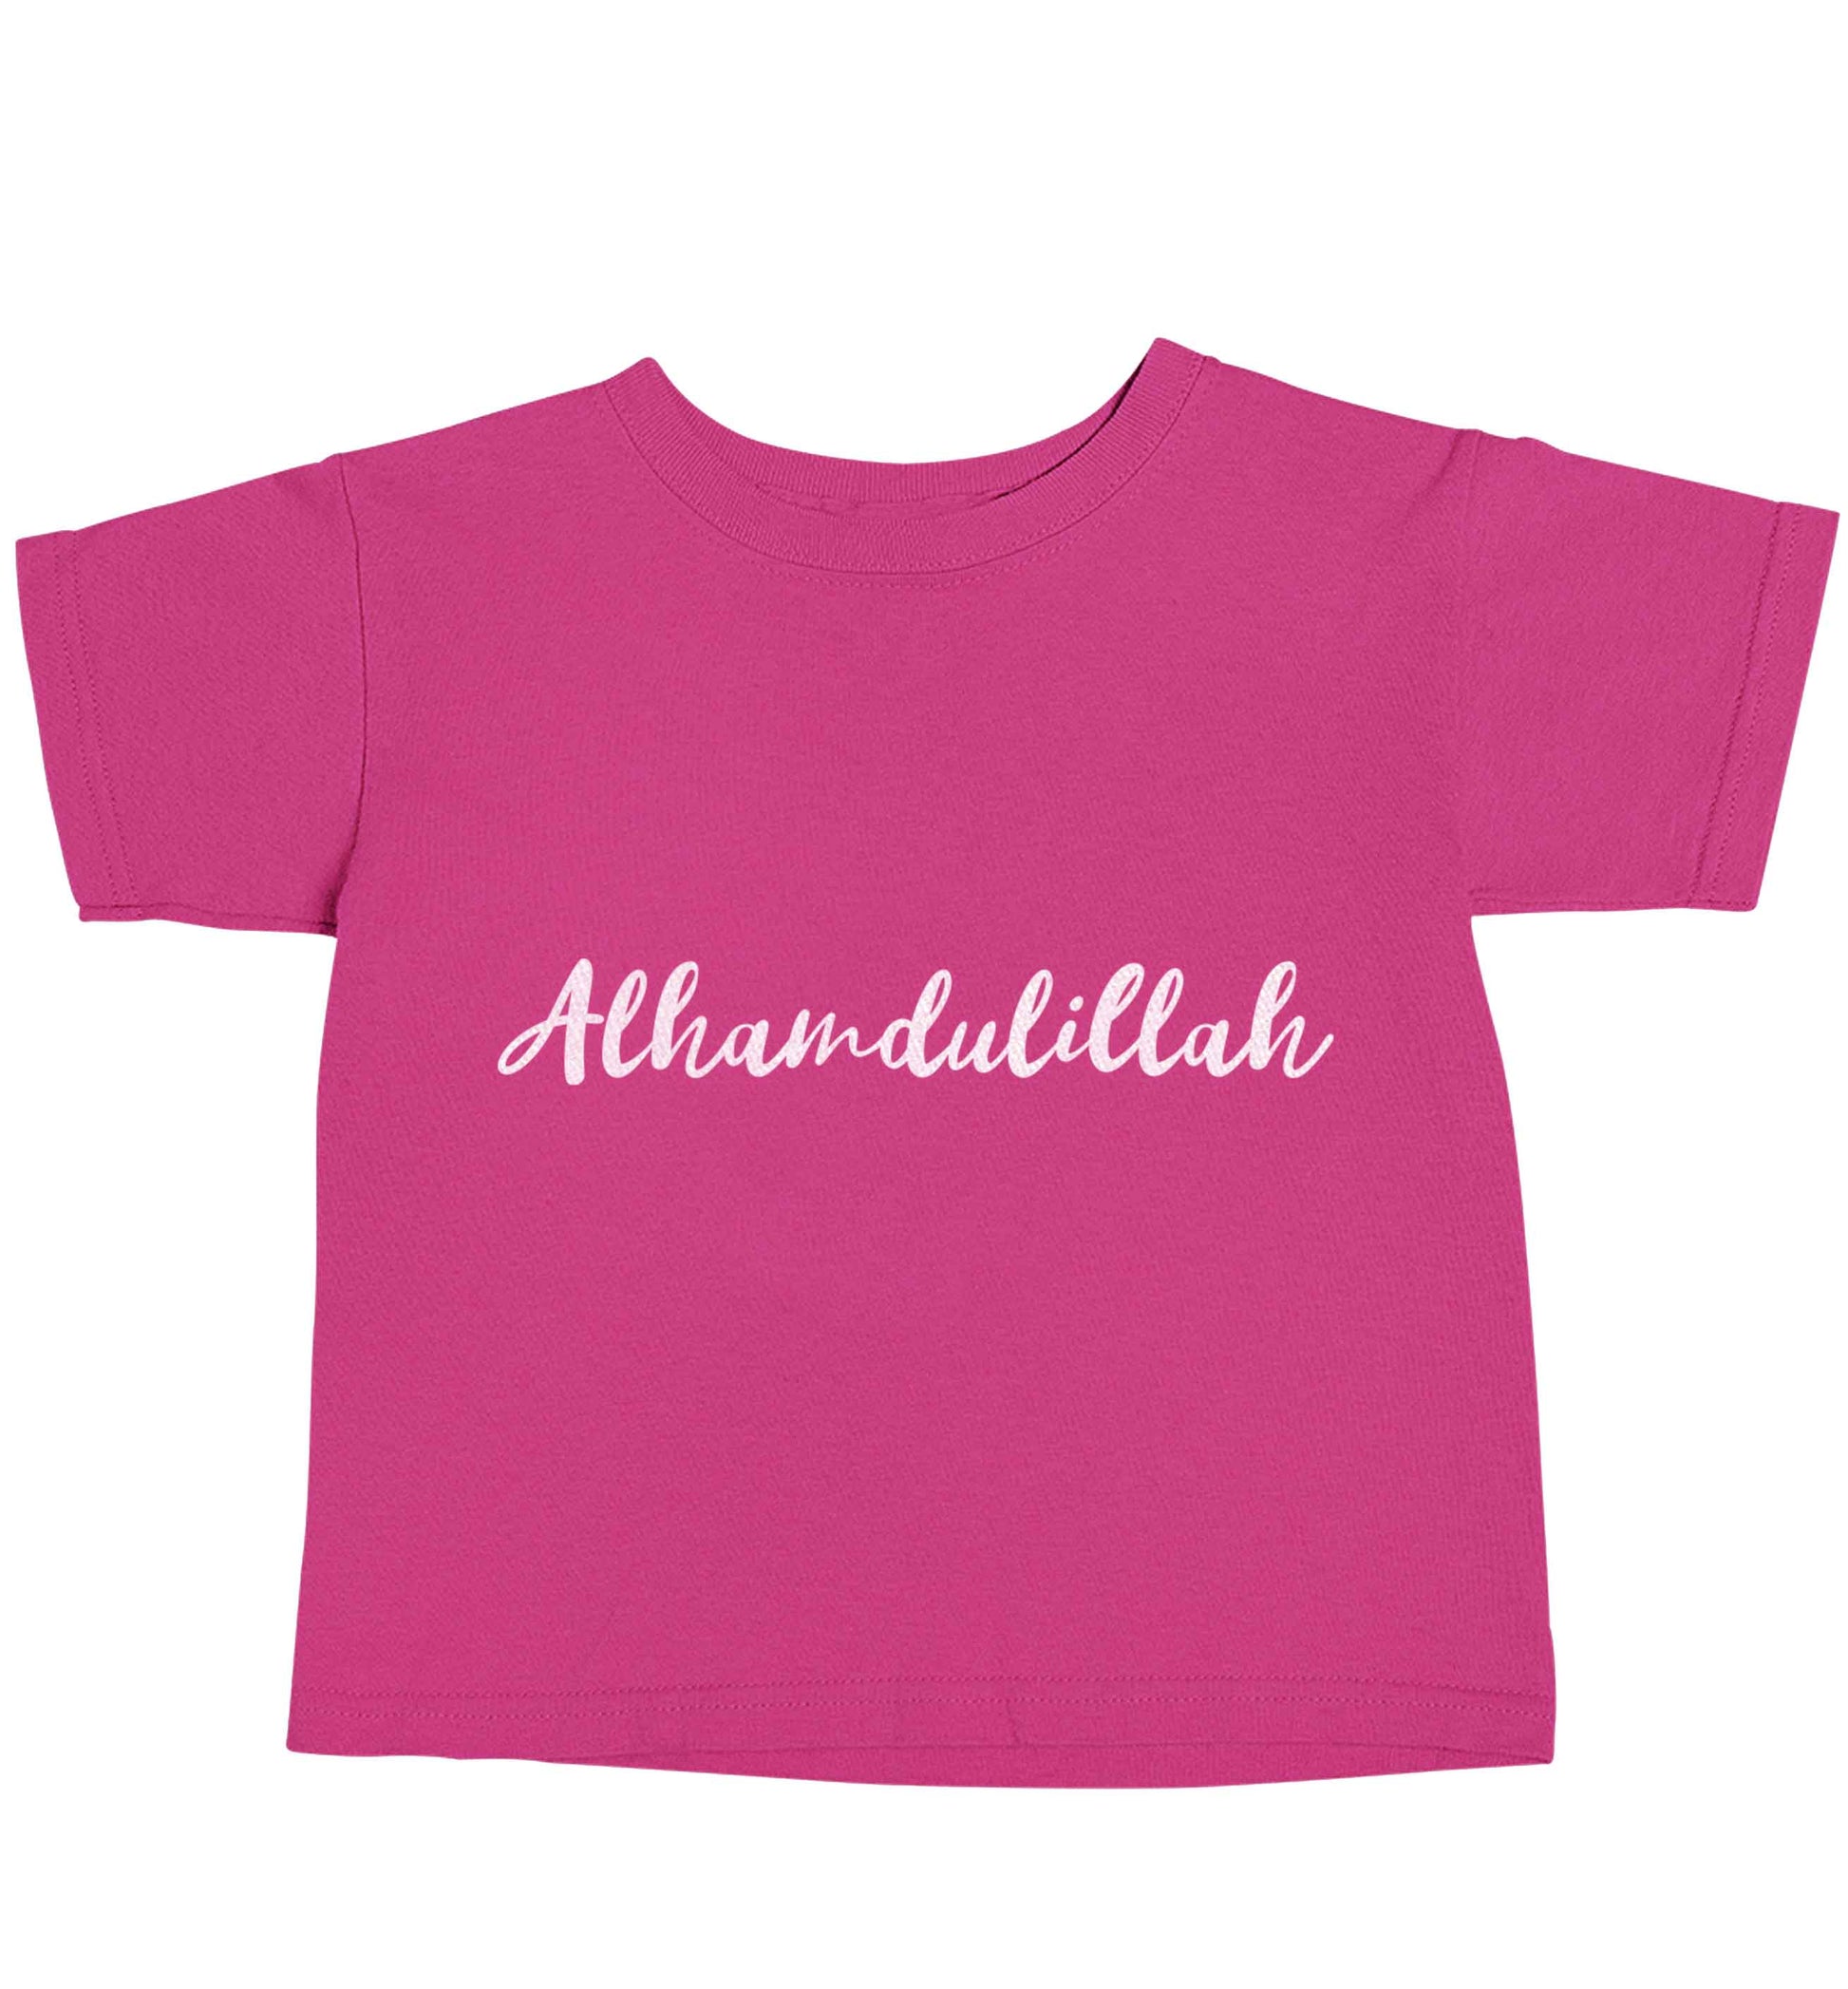 alhamdulillah pink baby toddler Tshirt 2 Years